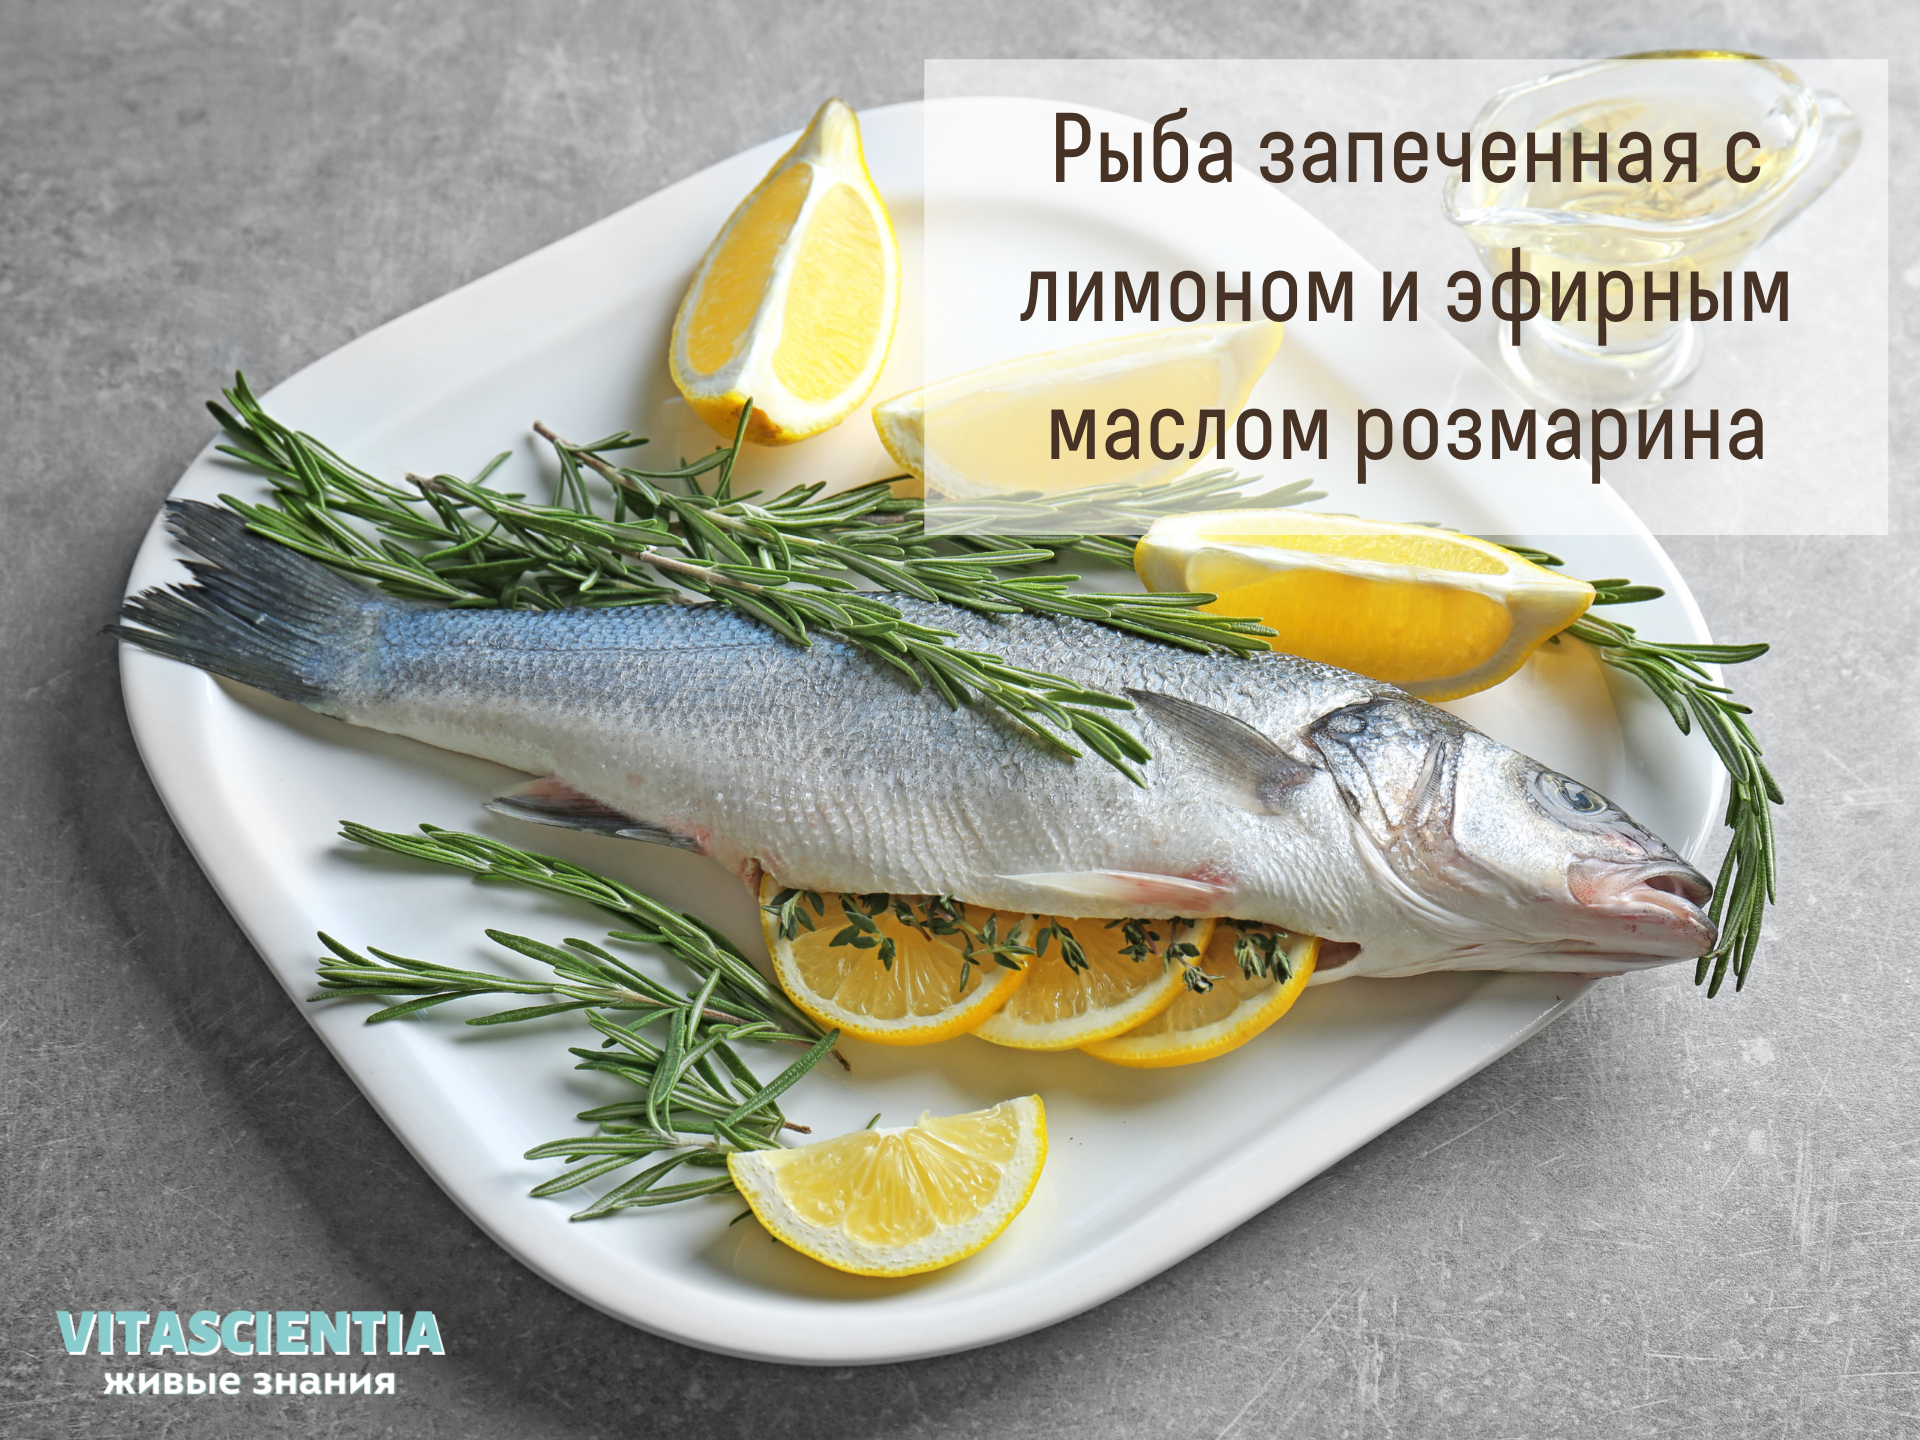  Рыба запеченная с лимоном и эфирным маслом розмарина